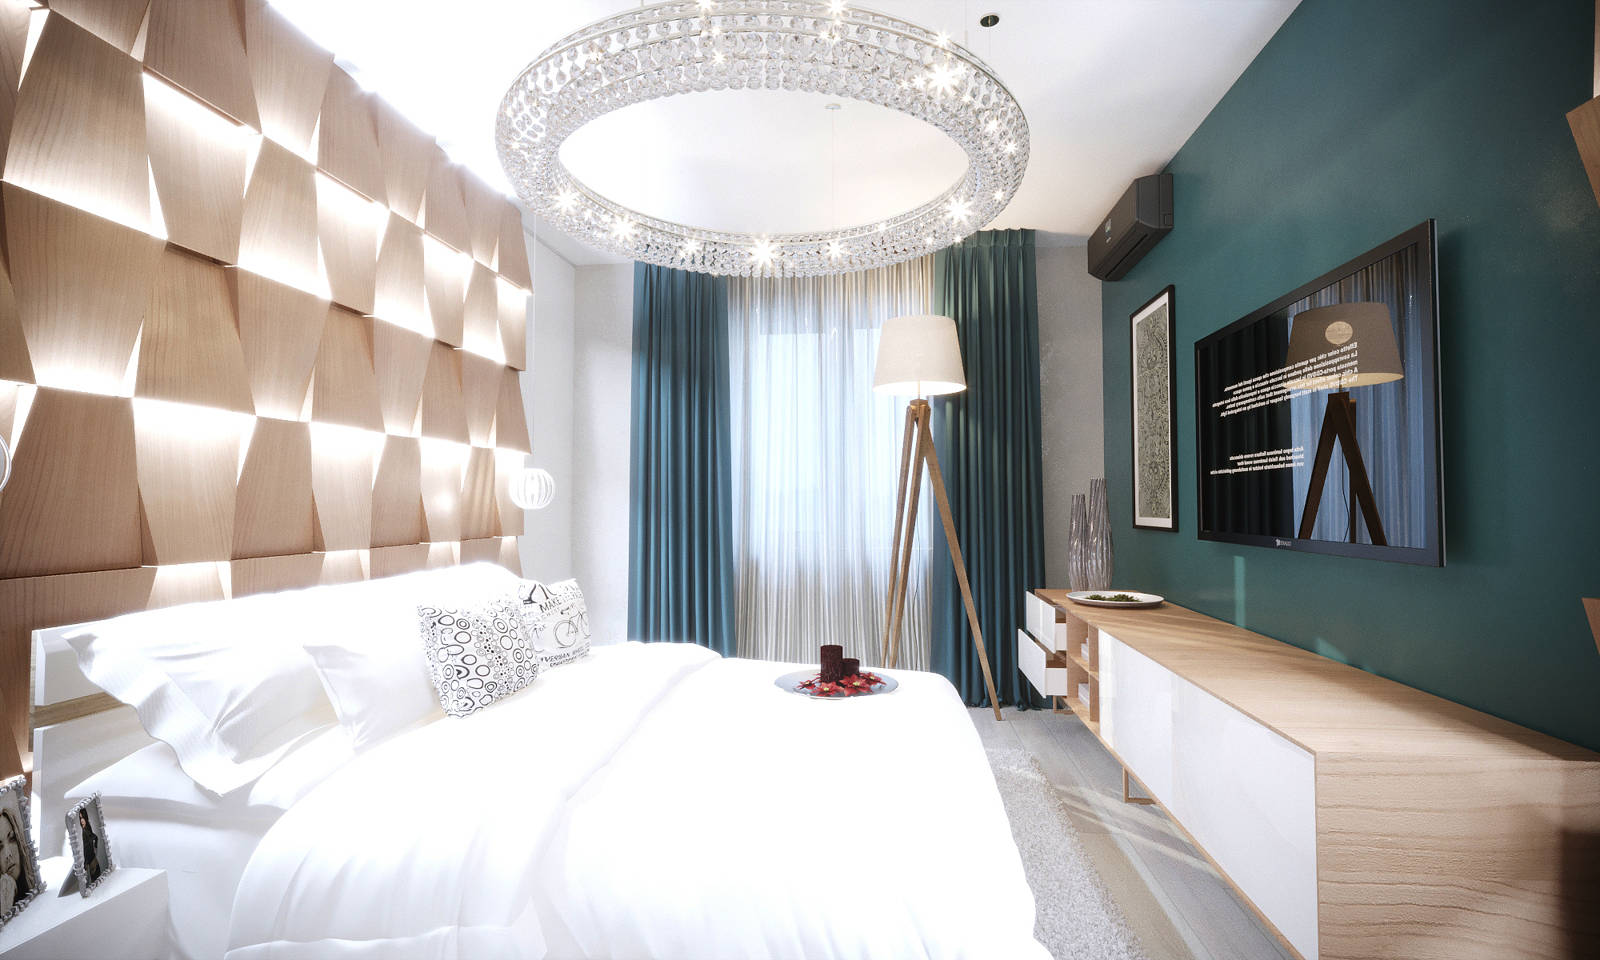 Дизайн спальни Киев современный стиль, панели над кроватью с подсветкой, дерево на стенах, 3д панели, идеи